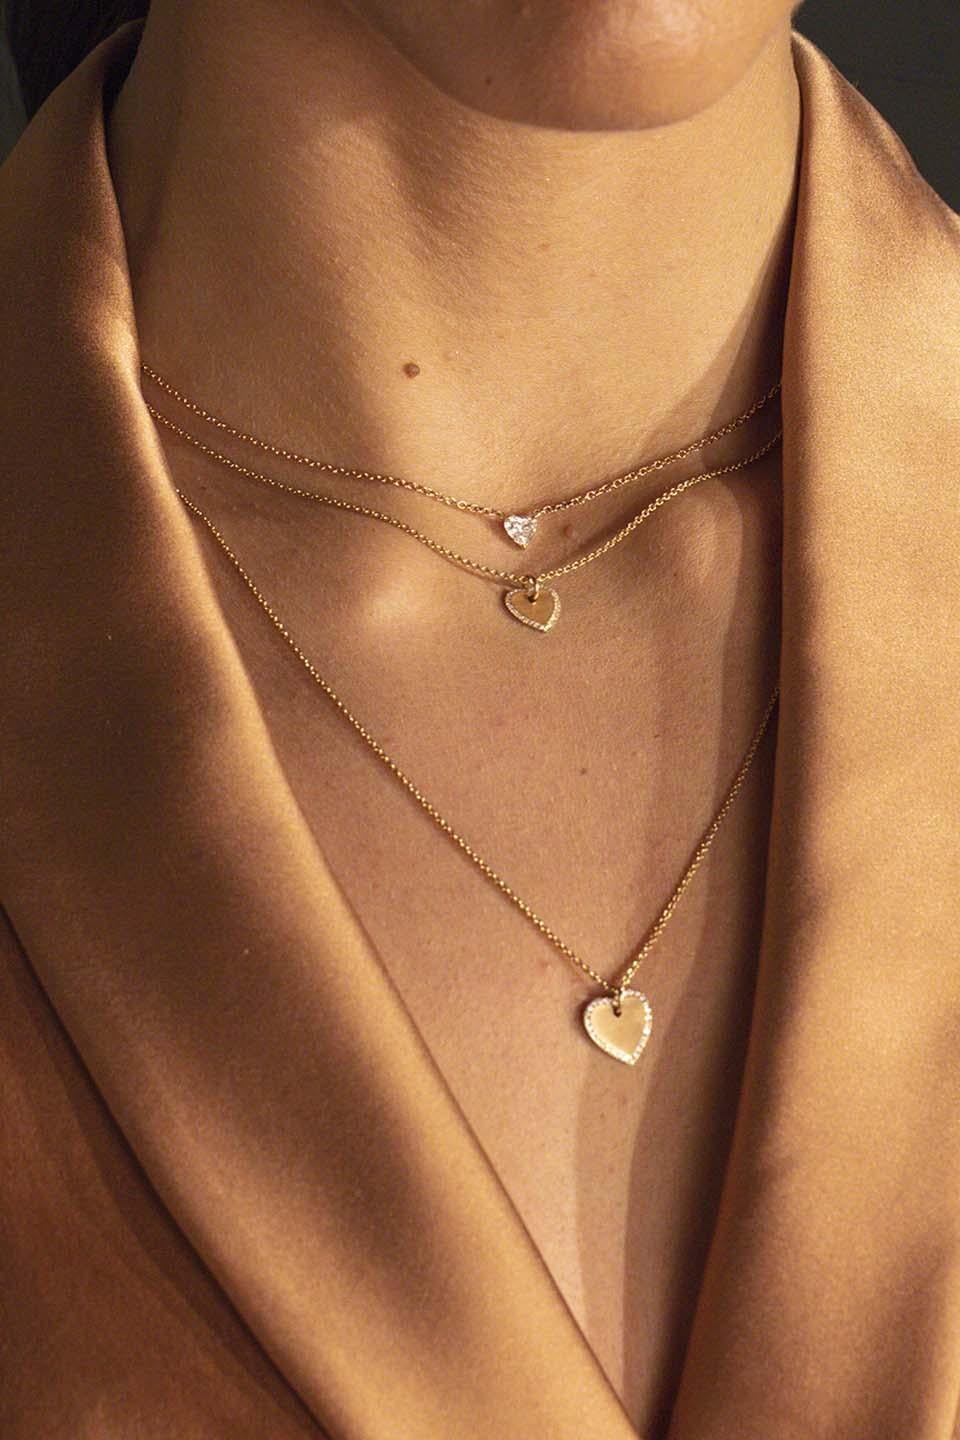 18 Karat Rose Gold Halskette 0,20 Karat Weißer Diamant im Herzschliff

Dies ist unsere Herz-Halskette, die in 18 Karat Weiß- oder Gelbgold erhältlich ist. Dieses Stück ist wirklich einzigartig, weil der Diamant mit unserer 